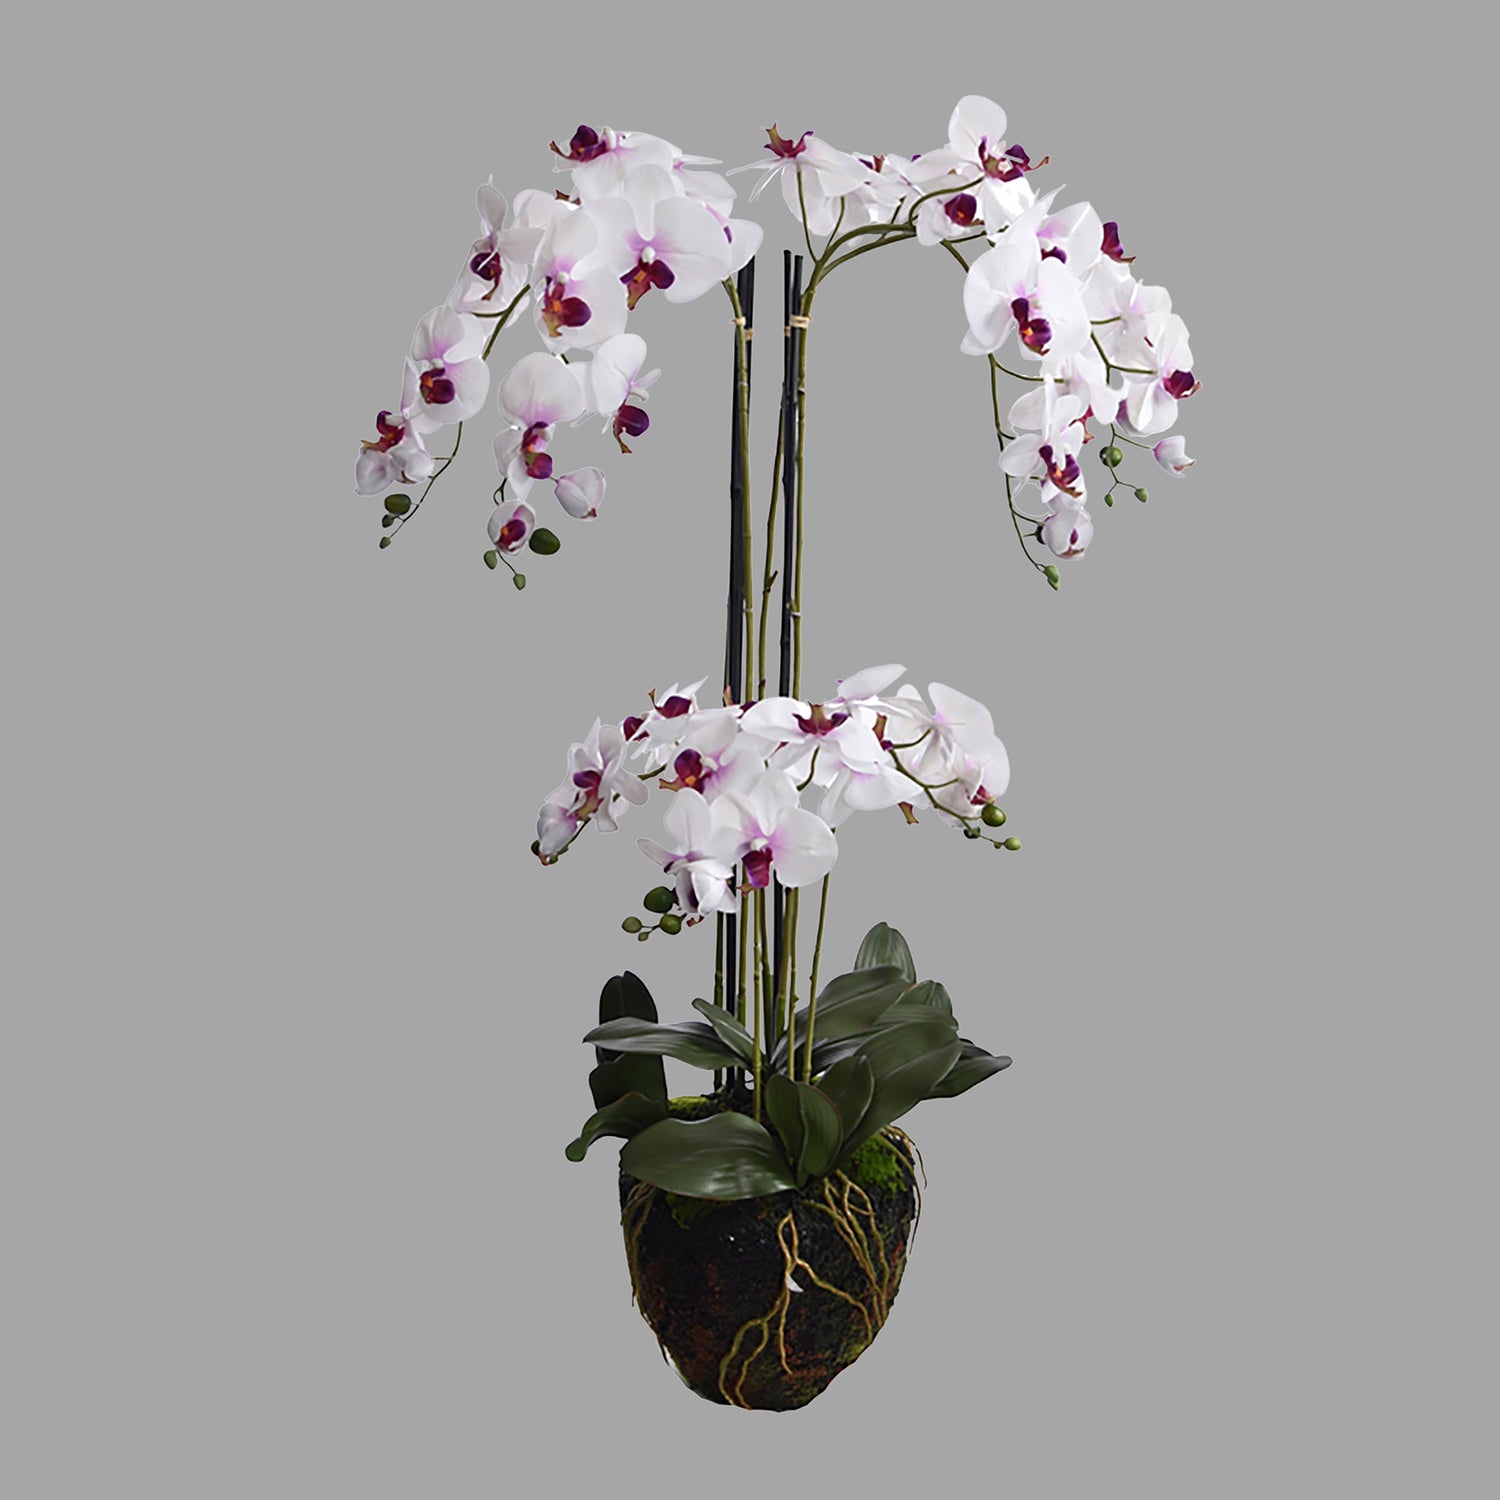 Fehér-lila színű mű orchidea, mesterséges földlabdában.